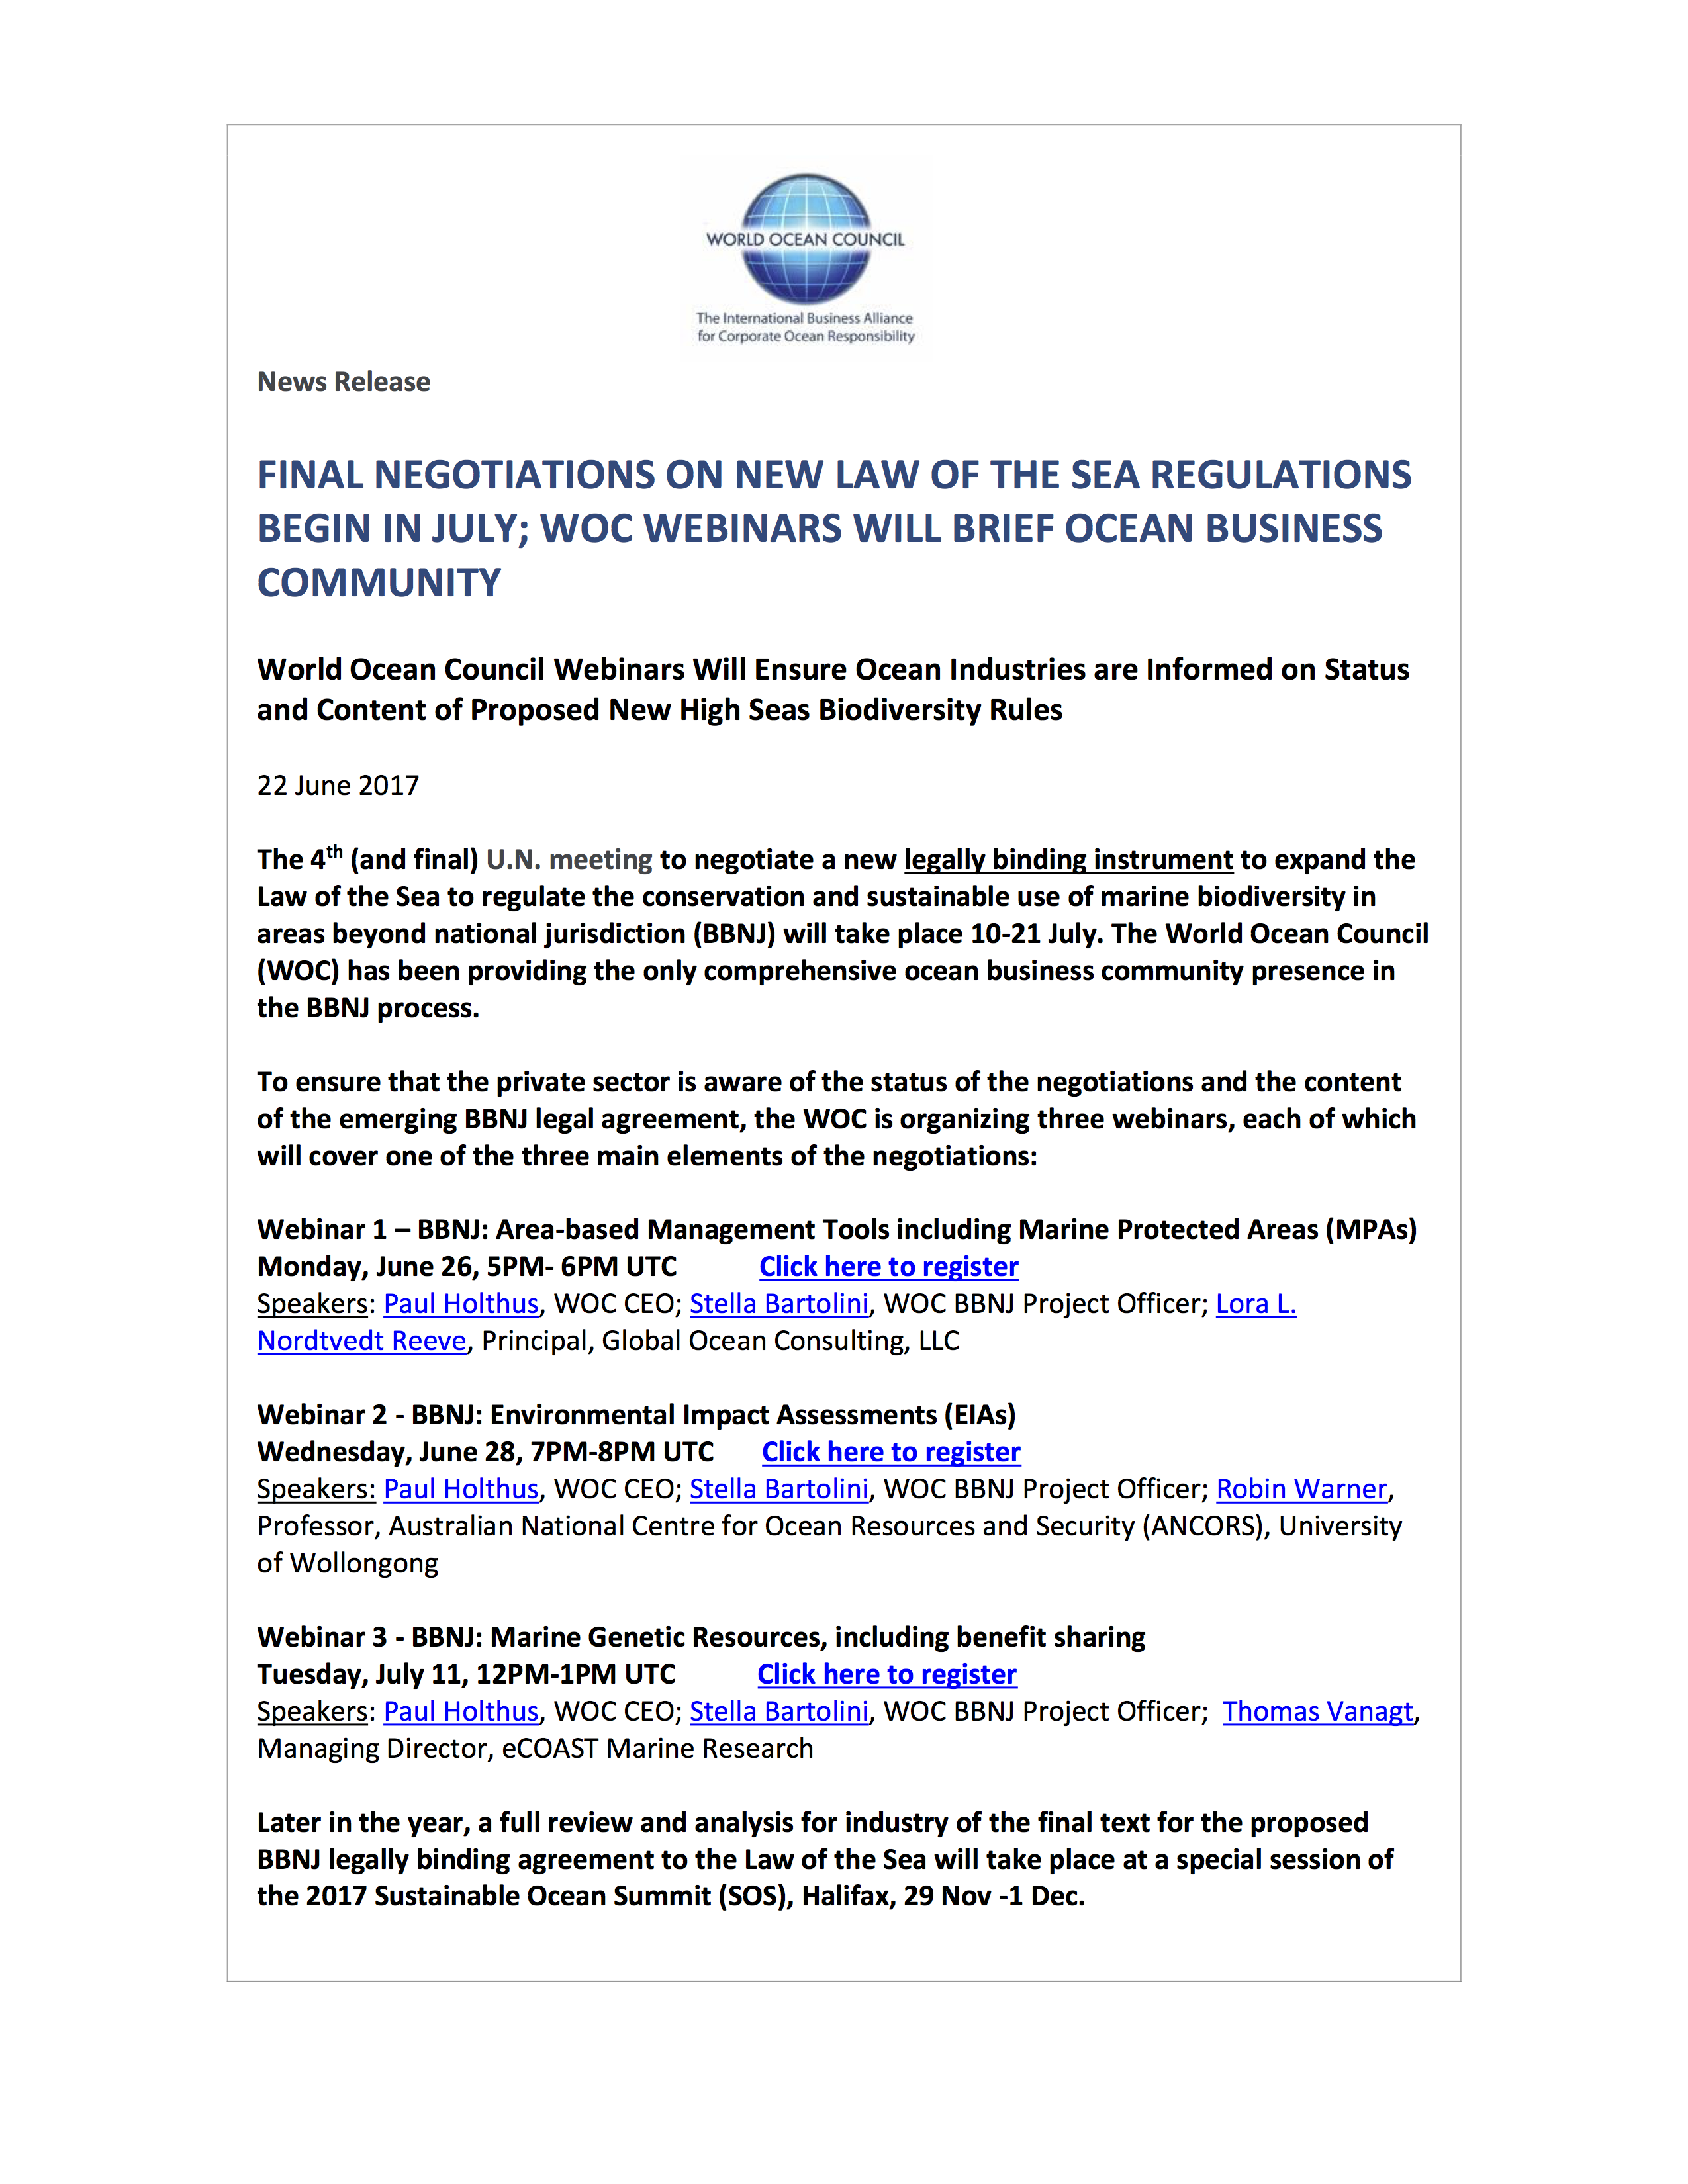 New High Seas Regulations - WOC Webinars to Brief Ocean Industries